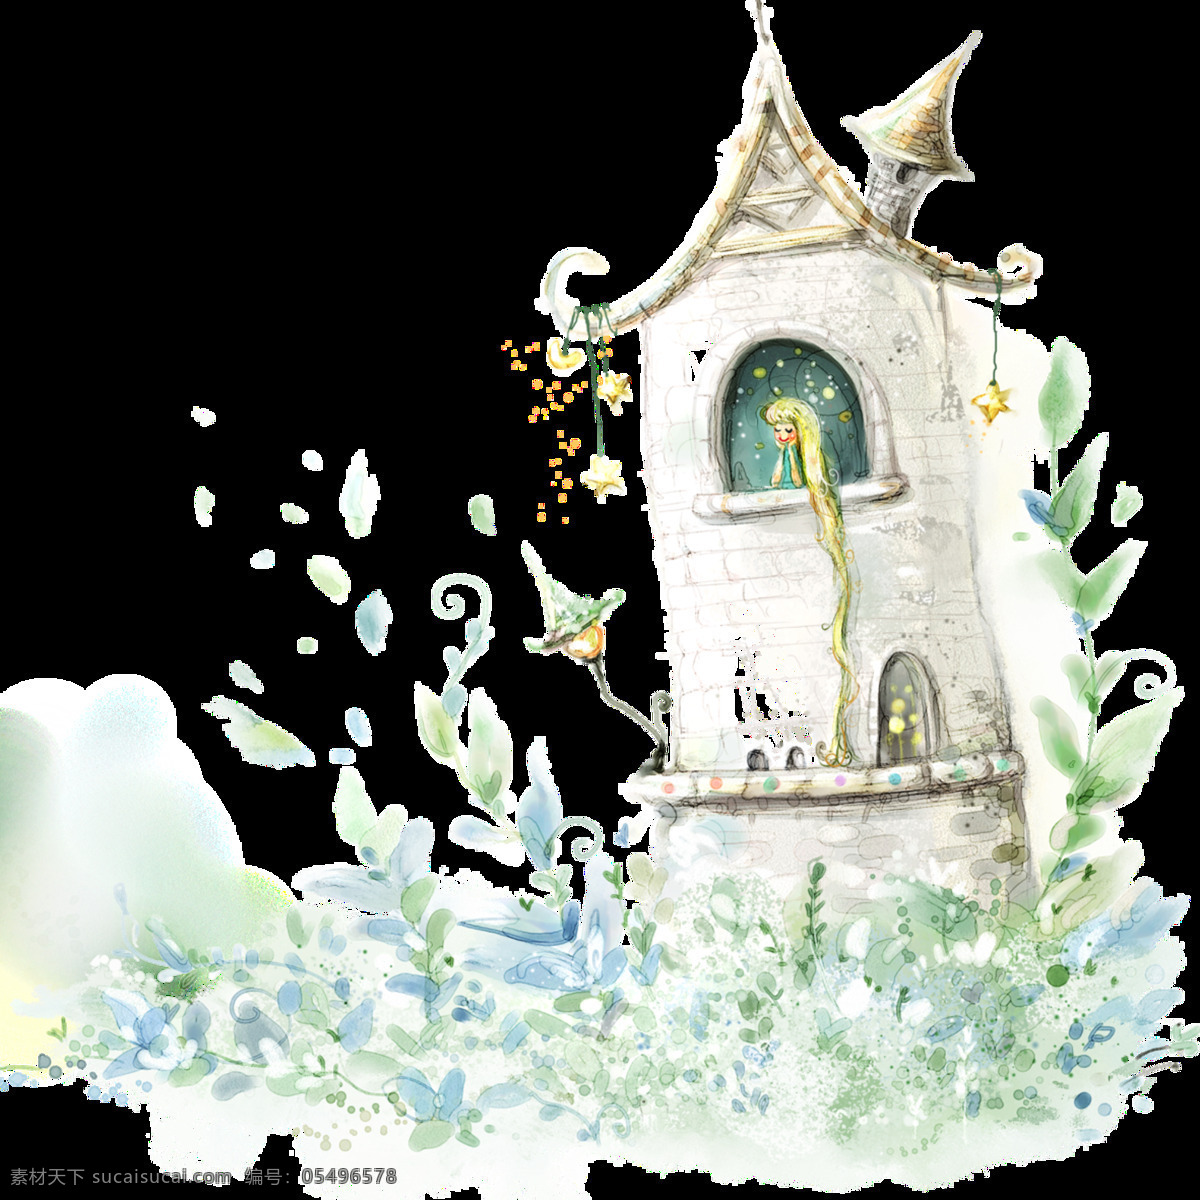 手绘 童话 城堡 图案 png图案 彩绘素材 彩色装饰 设计元素 童话世界 童话屋 童话元素 装饰图片